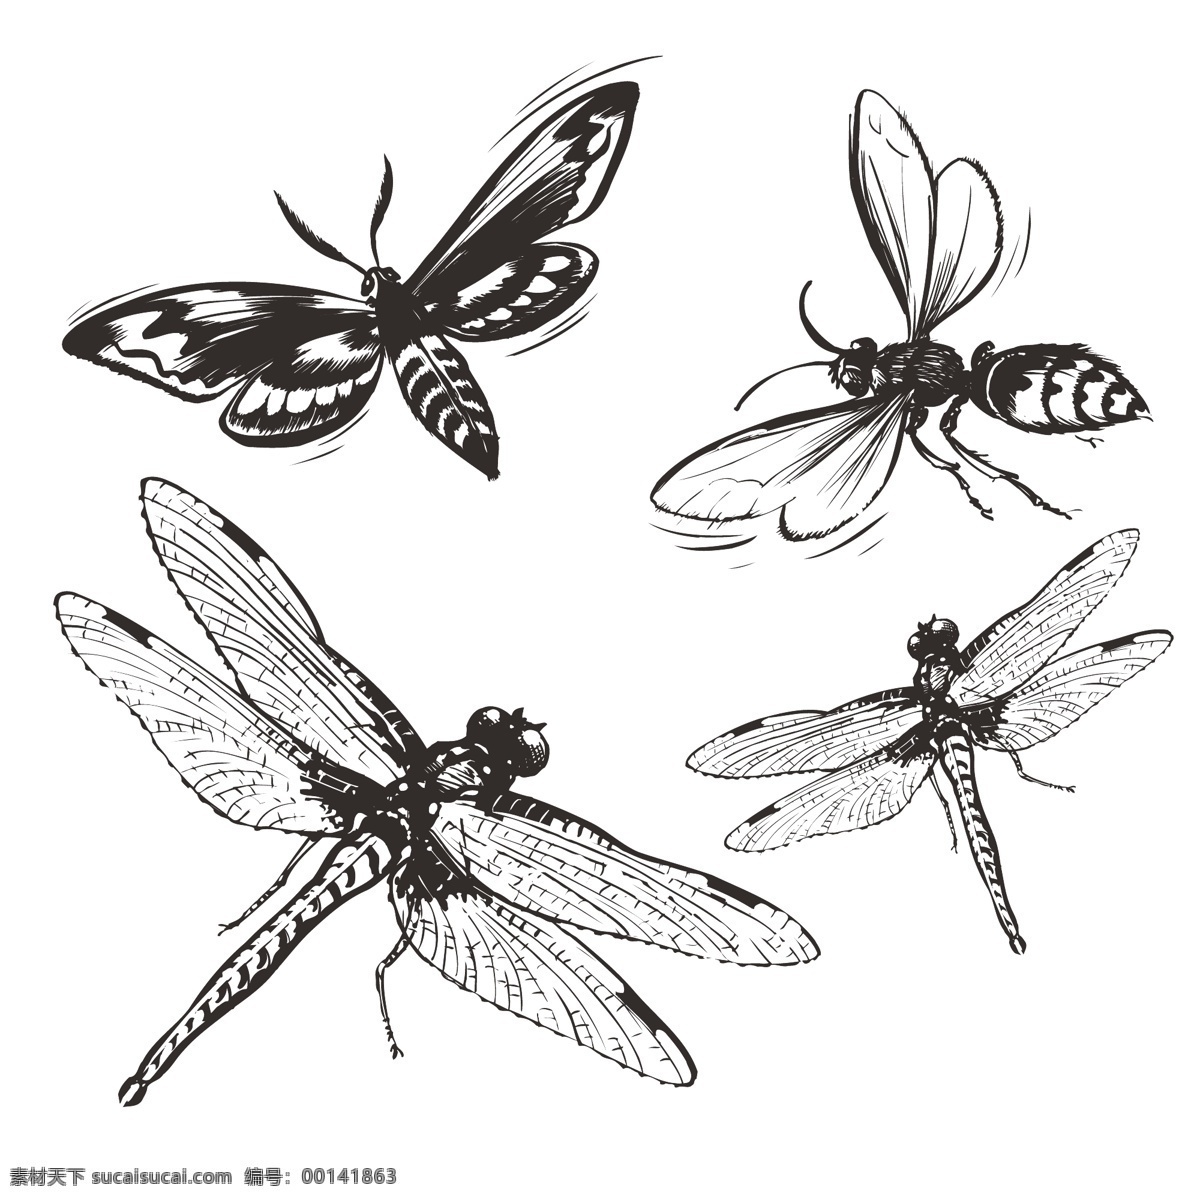 印花 矢量图 动物 服装图案 昆虫 蜜蜂 蜻蜓 印花矢量图 面料图库 服装设计 图案花型